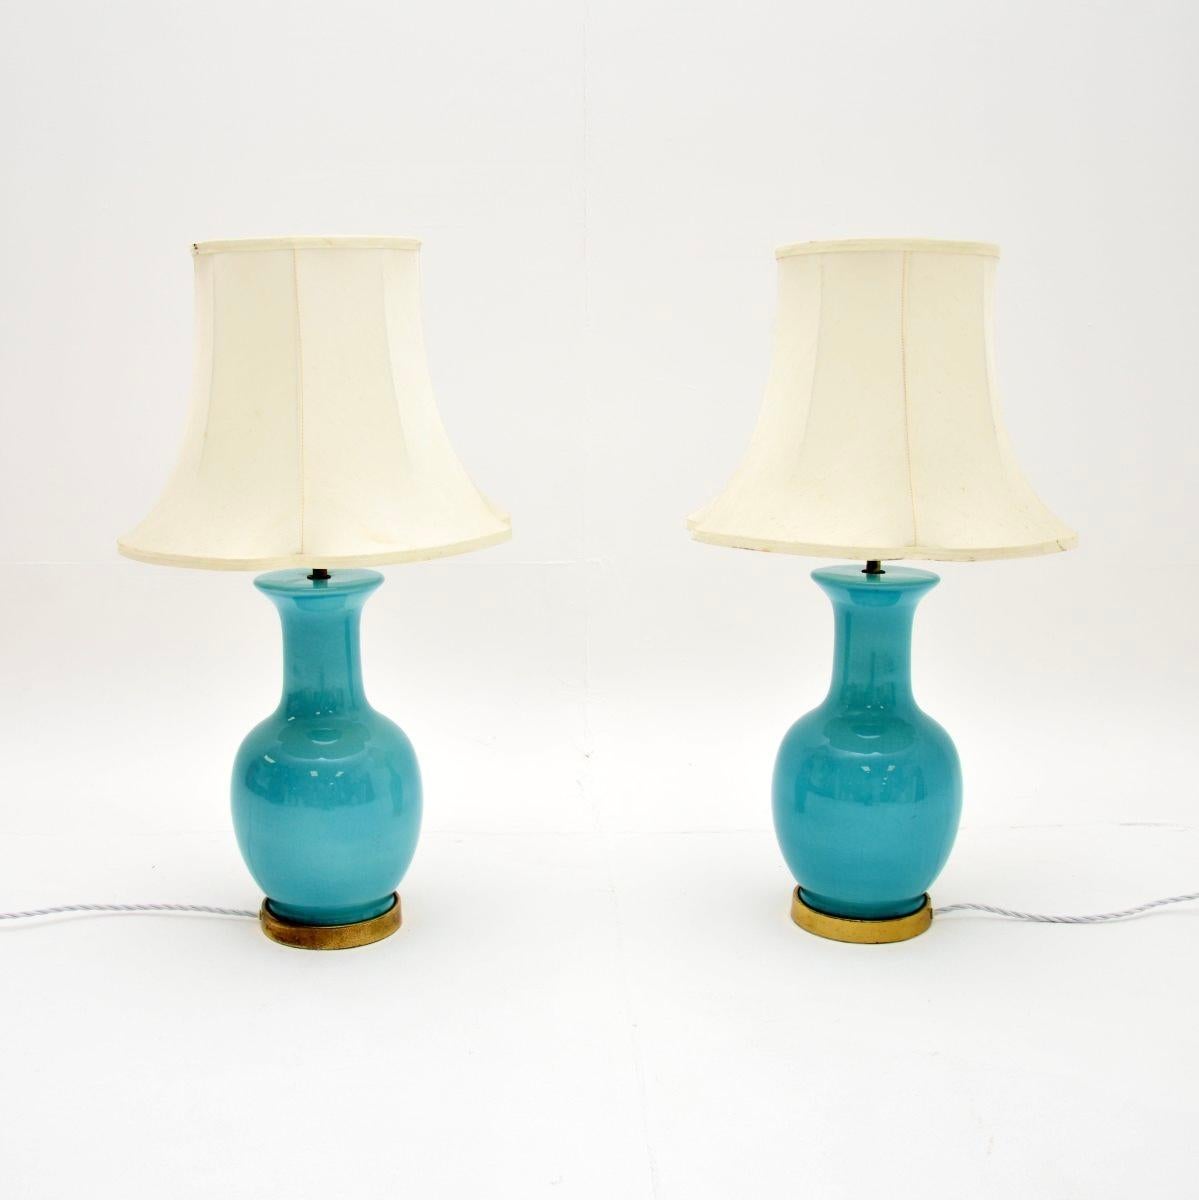 Ein atemberaubendes Paar Vintage-Tischlampen aus Keramik und Messing. Sie wurden in England hergestellt und stammen etwa aus den 1960er Jahren.

Die Keramik hat einen wunderschönen türkisblauen Farbton, der durch einen Messingrand am unteren Rand